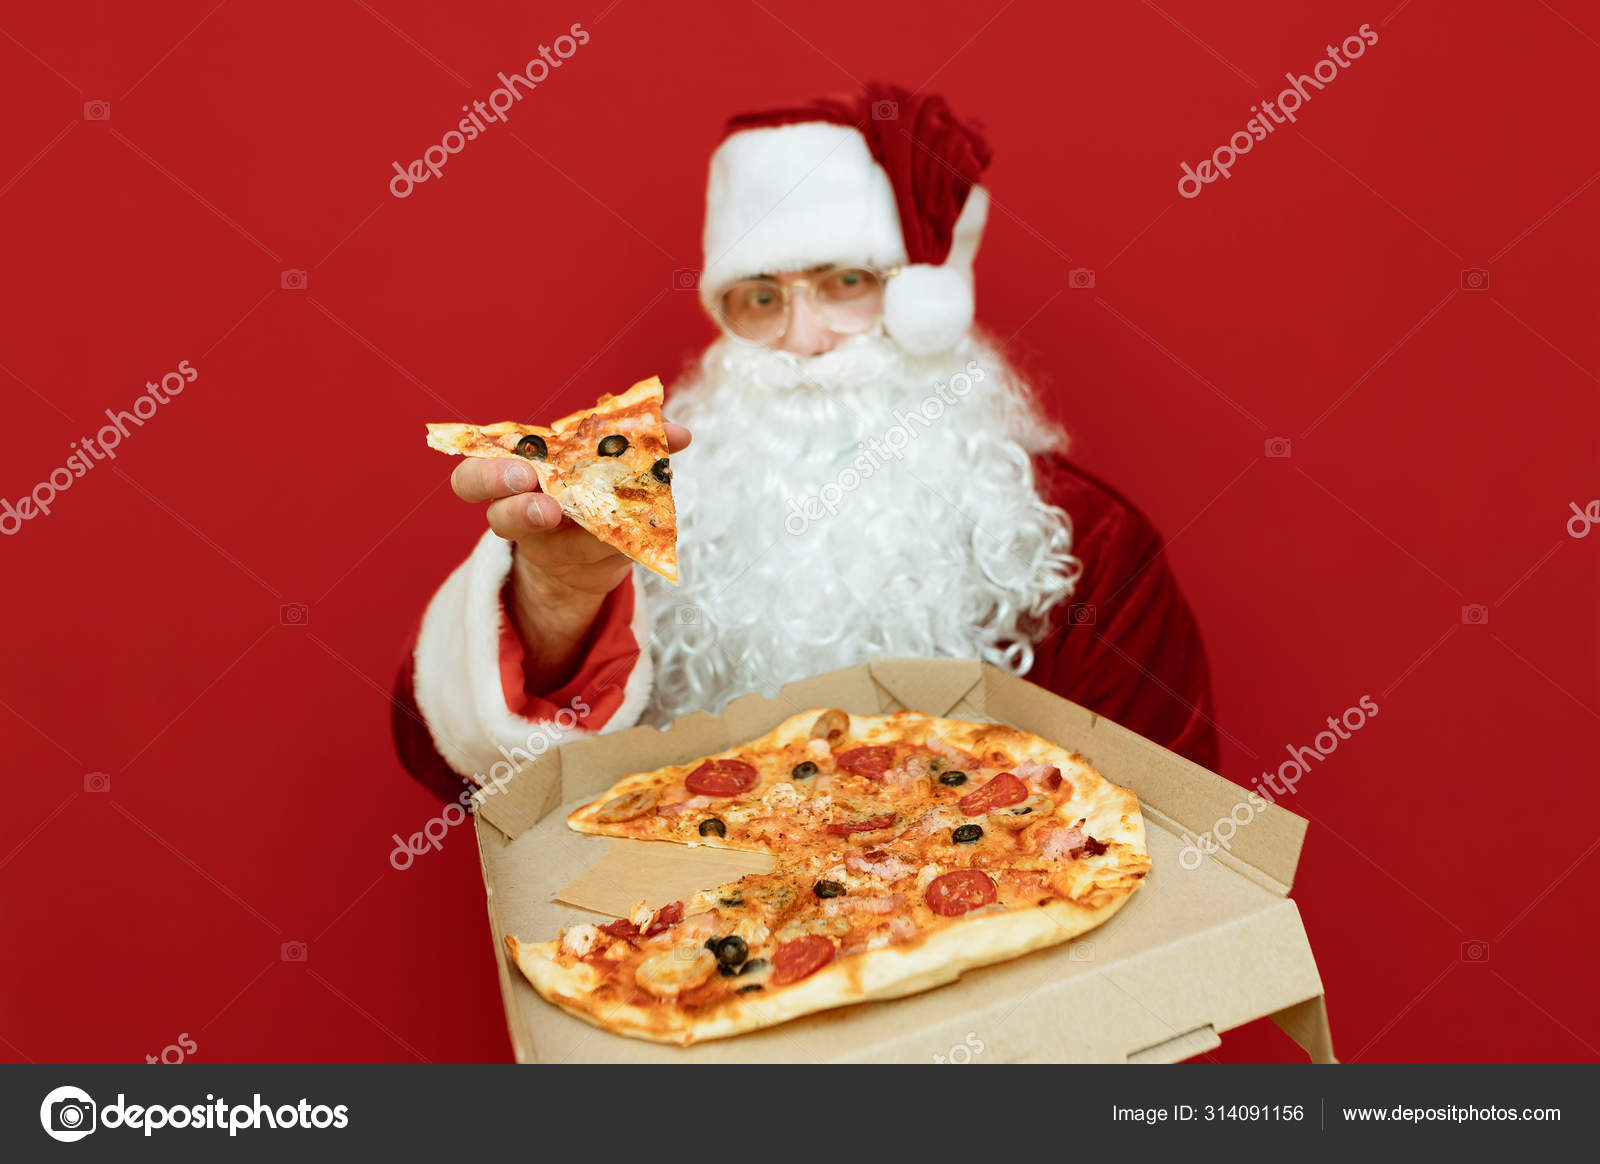 Babbo Natale Pizzeria.Babbo Natale Si Erge Su Sfondo Rosso Con Scatola Di Pizza E Pezzo In Mano E